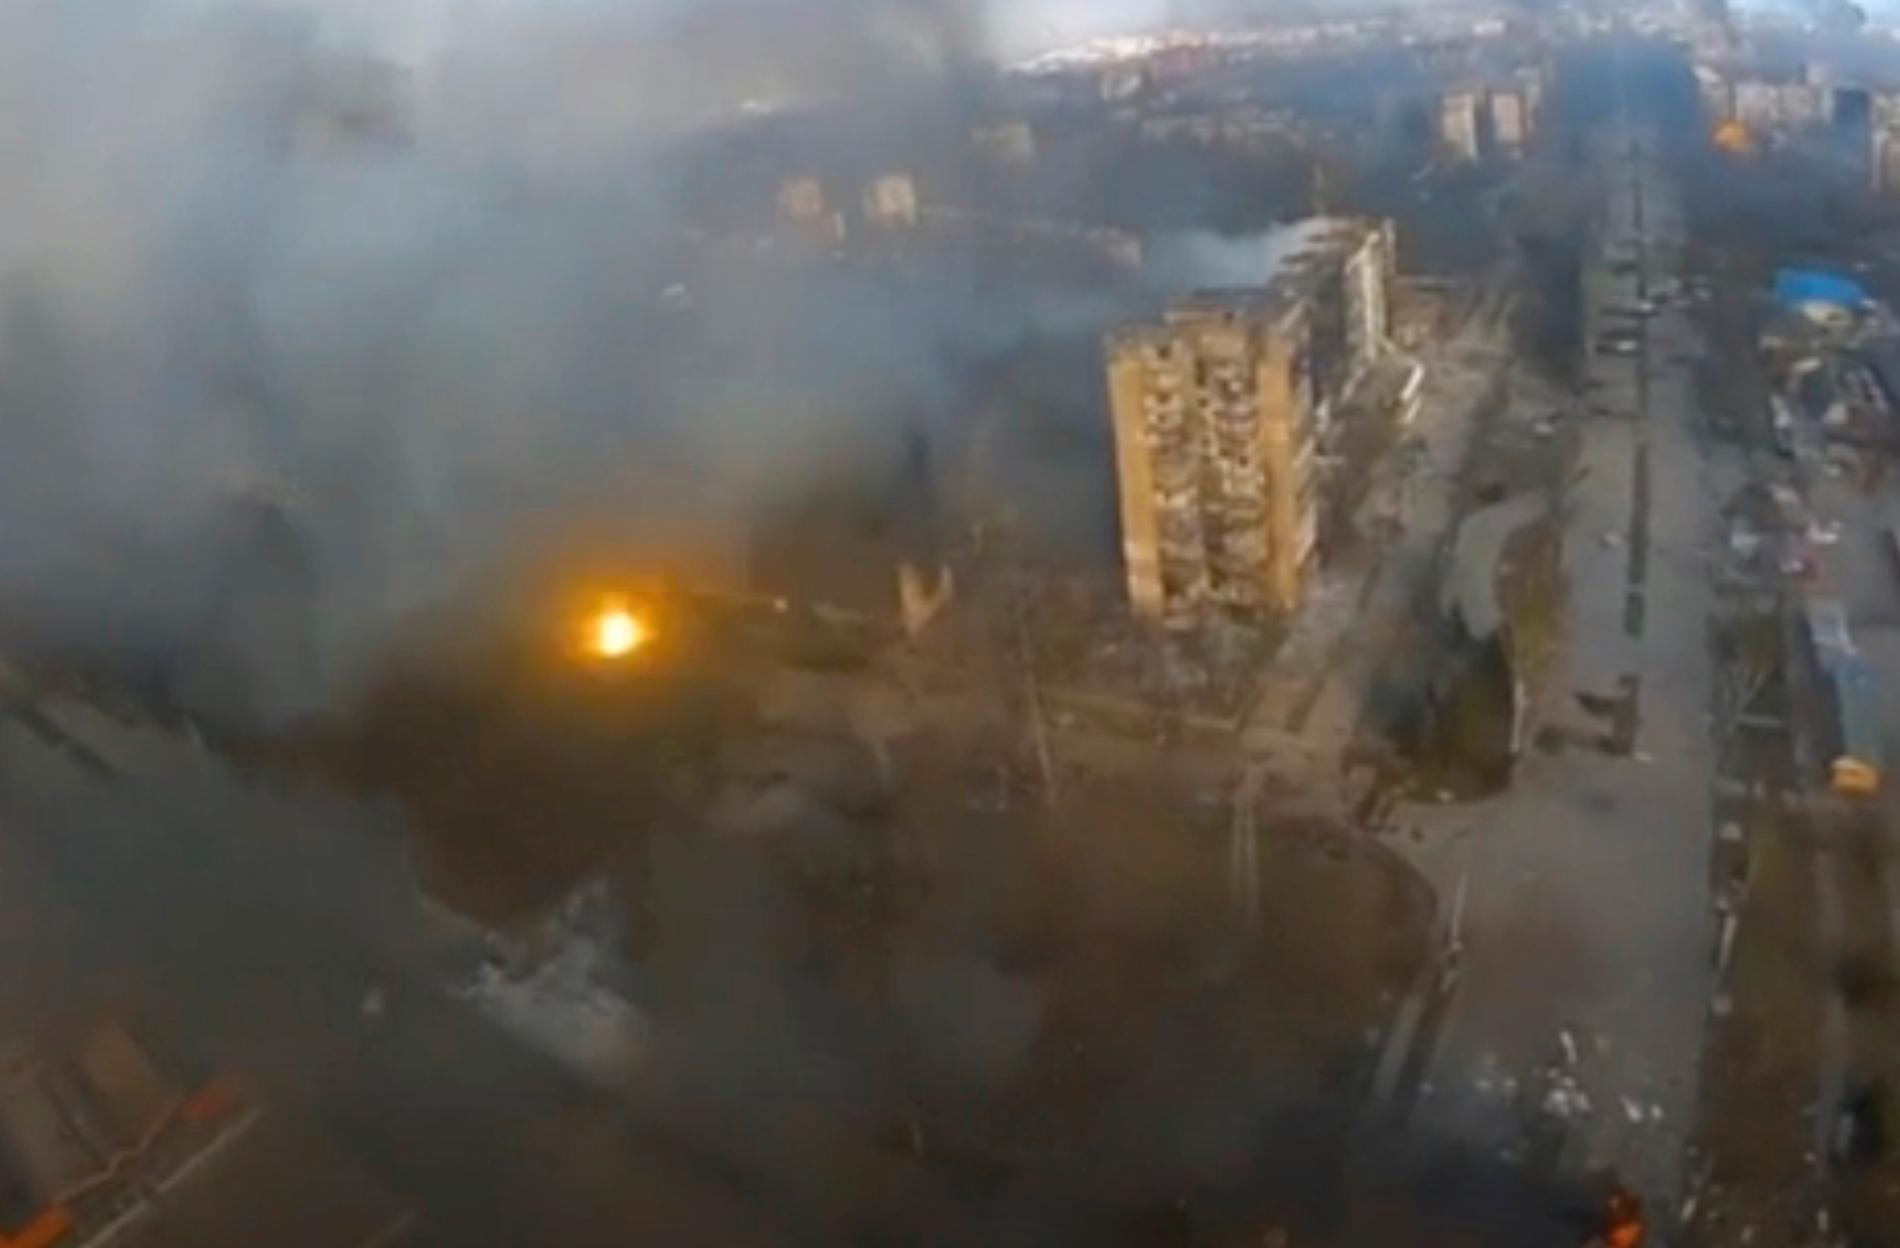 En explosion, och mörk rök stiger upp från flera byggnader i Mariupol. Bilden är från en video tagen i måndags. Staden, som ligger vid Azovsjön, är omringad av ryska styrkor och har utsatts för kraftigt bombardemang senaste veckan.